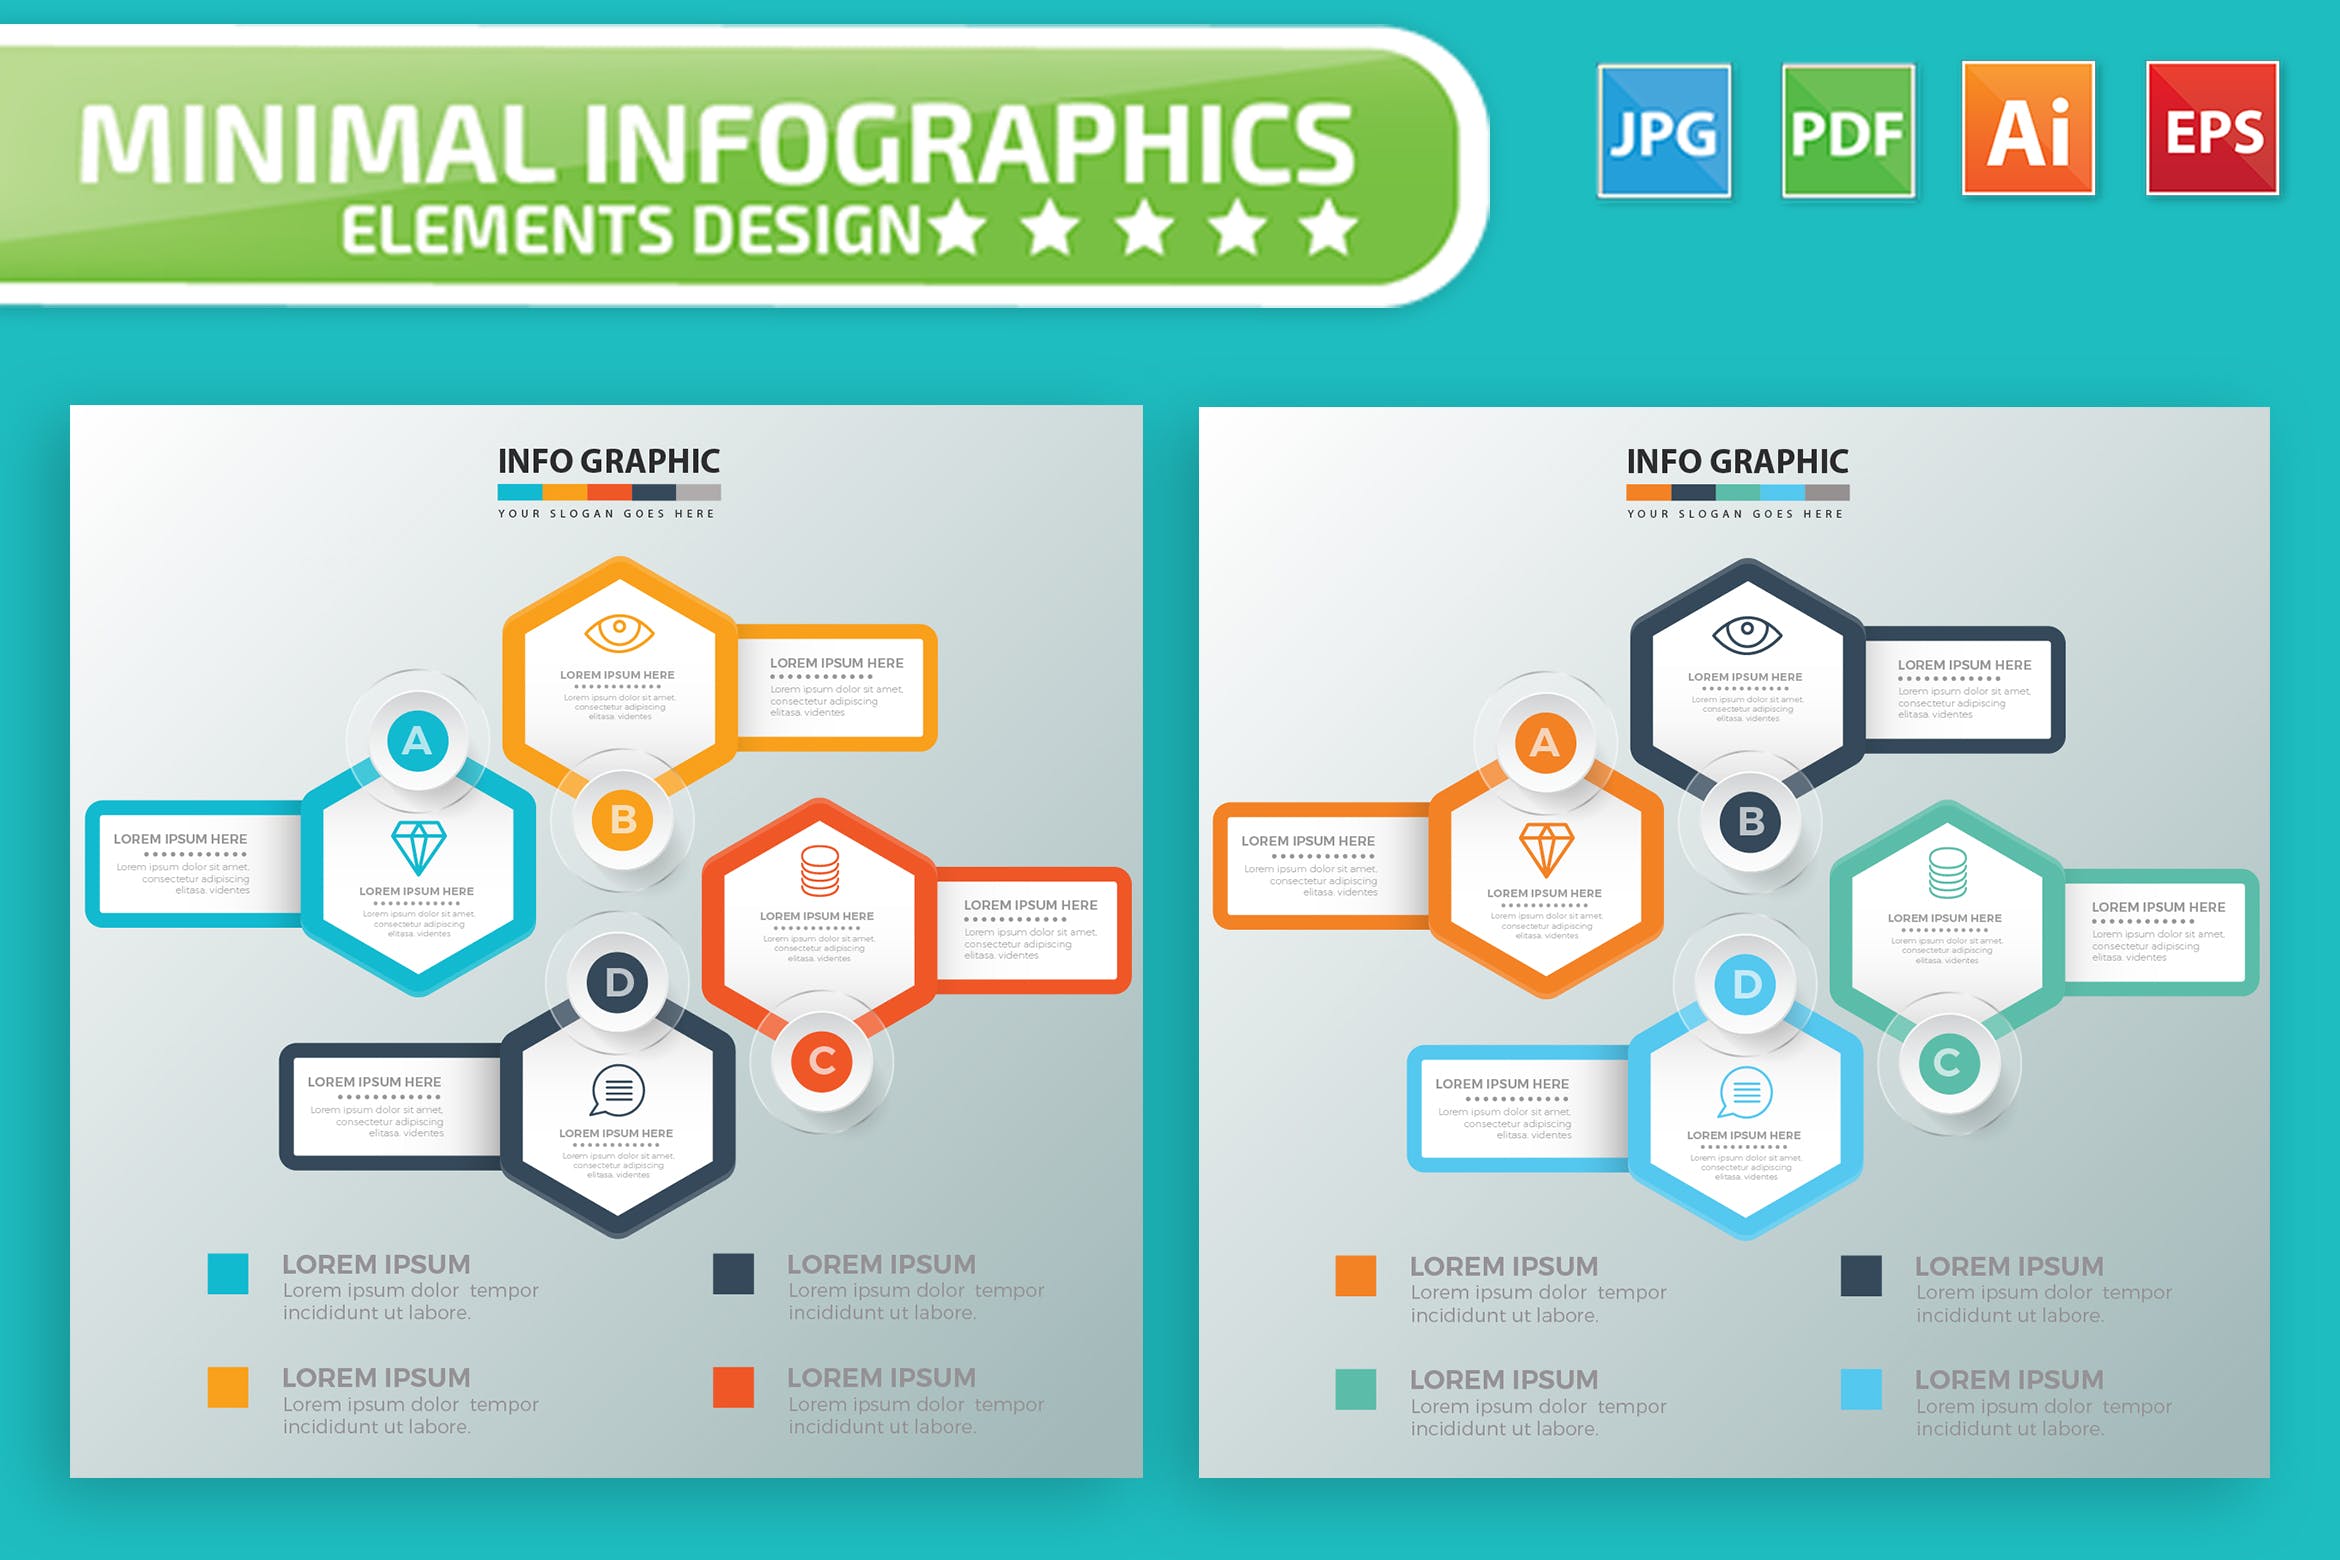 要点说明/重要特征信息图表矢量图形素材库精选素材v7 Infographic Elements Design插图